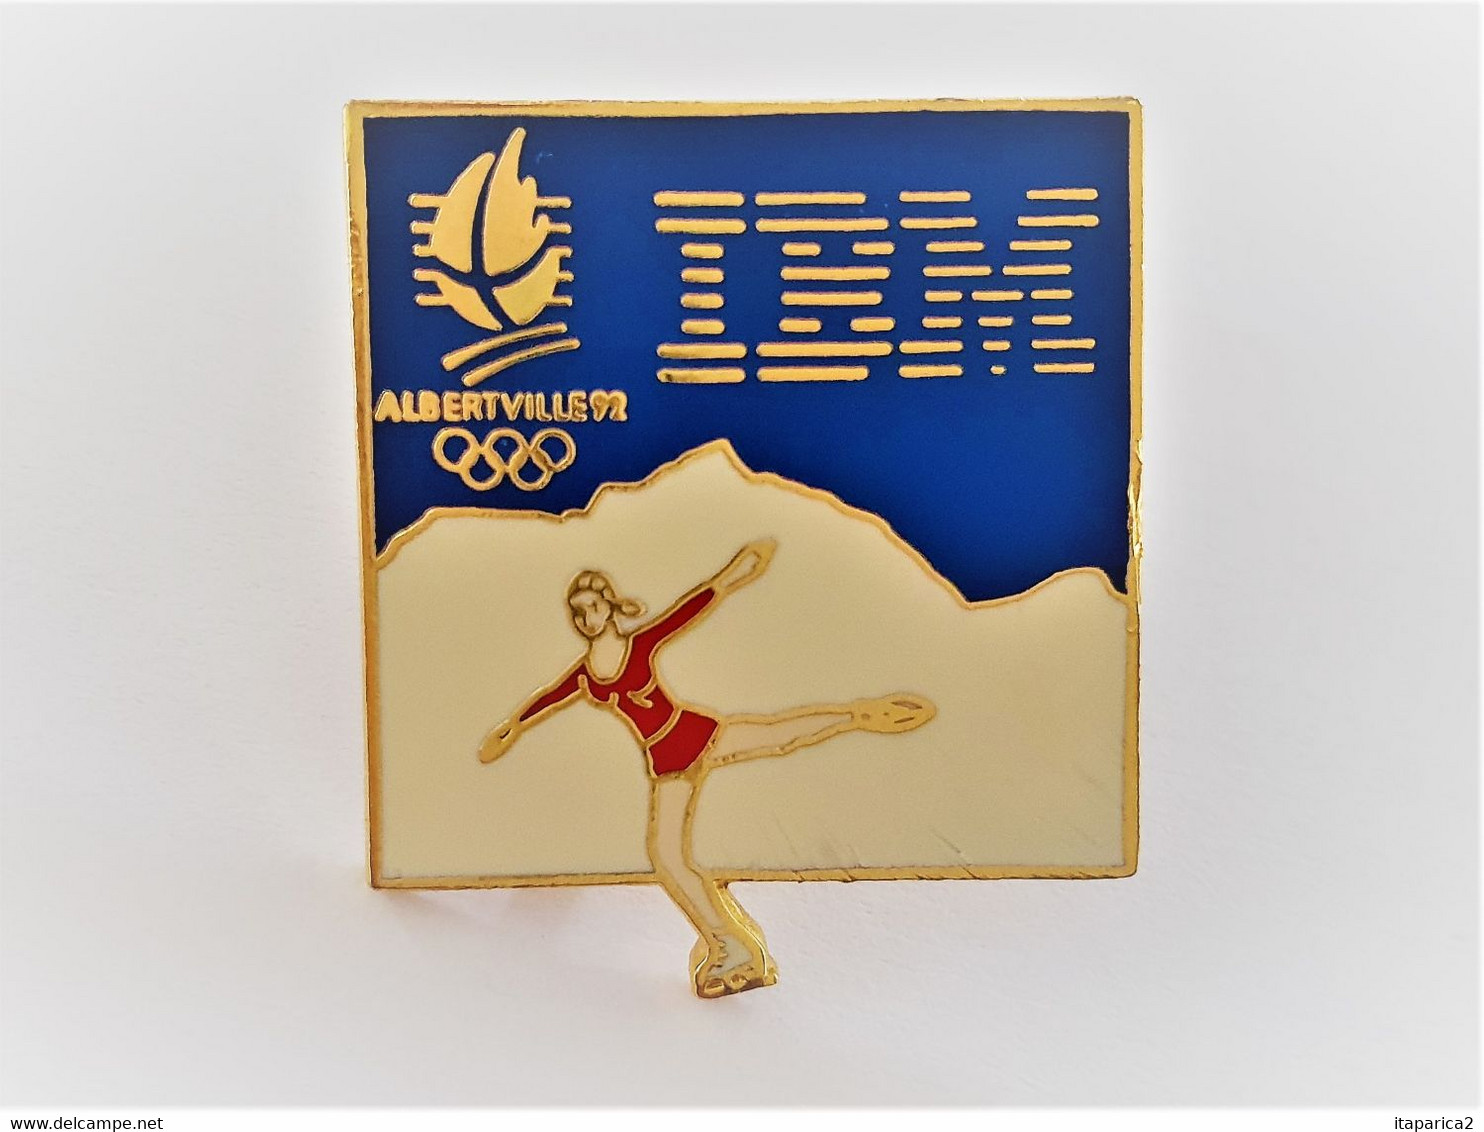 PINS JO JEUX OLYMPIQUES - ALBERTVILLE 92 IBM PATINAGE ARTISTIQUE / 33NAT - Jeux Olympiques